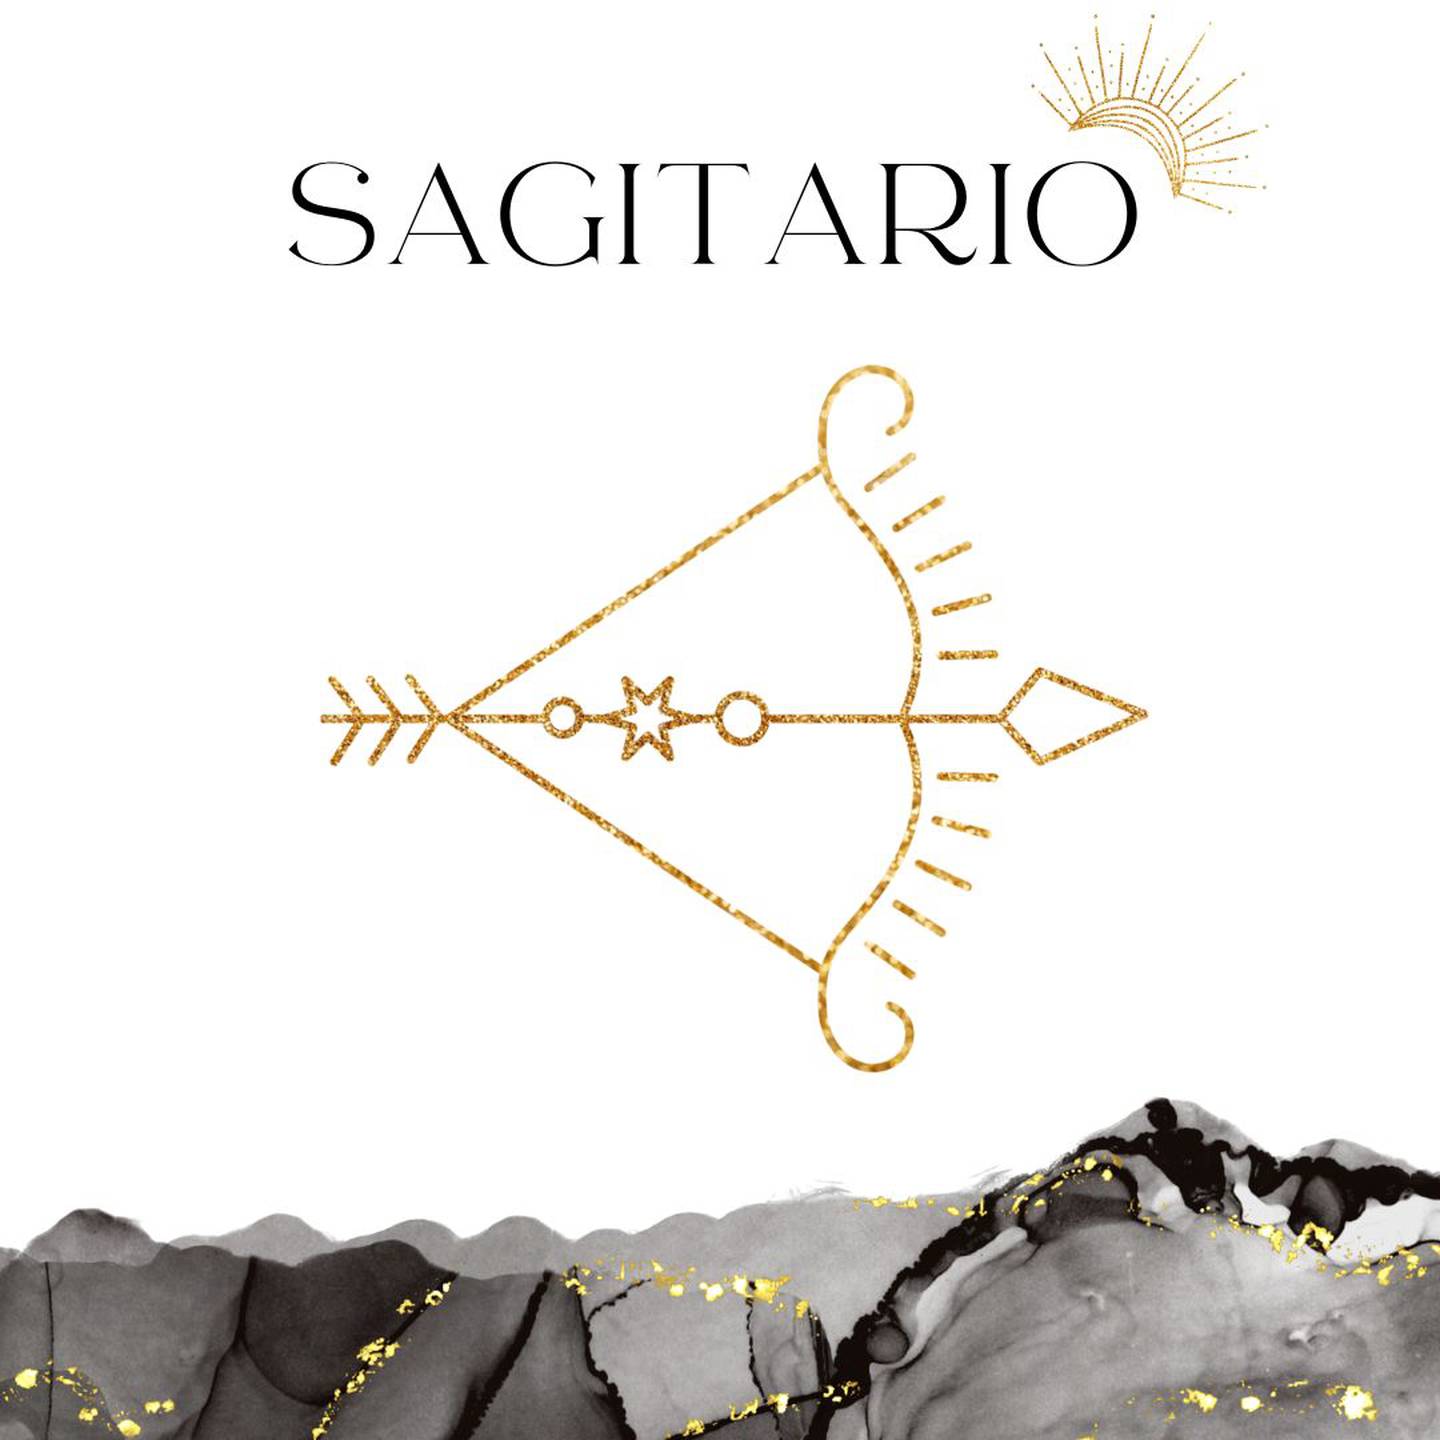 Palabra 'SAGITARIO' en letras grandes y negras en el centro. Debajo, símbolo del signo de Sagitario: un arco y flecha en dorado.